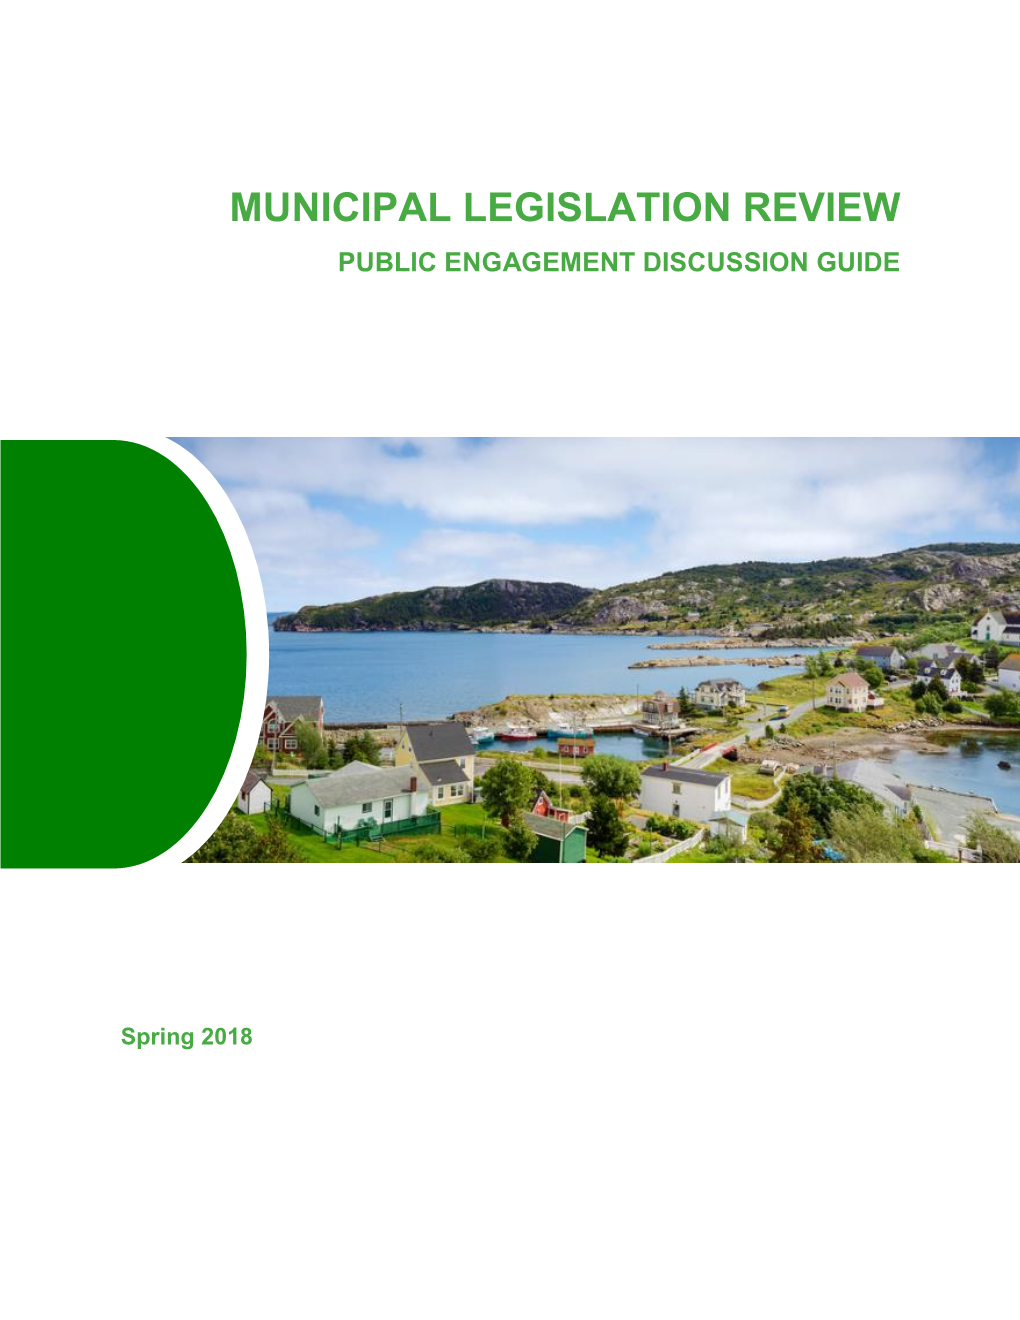 Municipal Legislation Review Public Engagement Discussion Guide